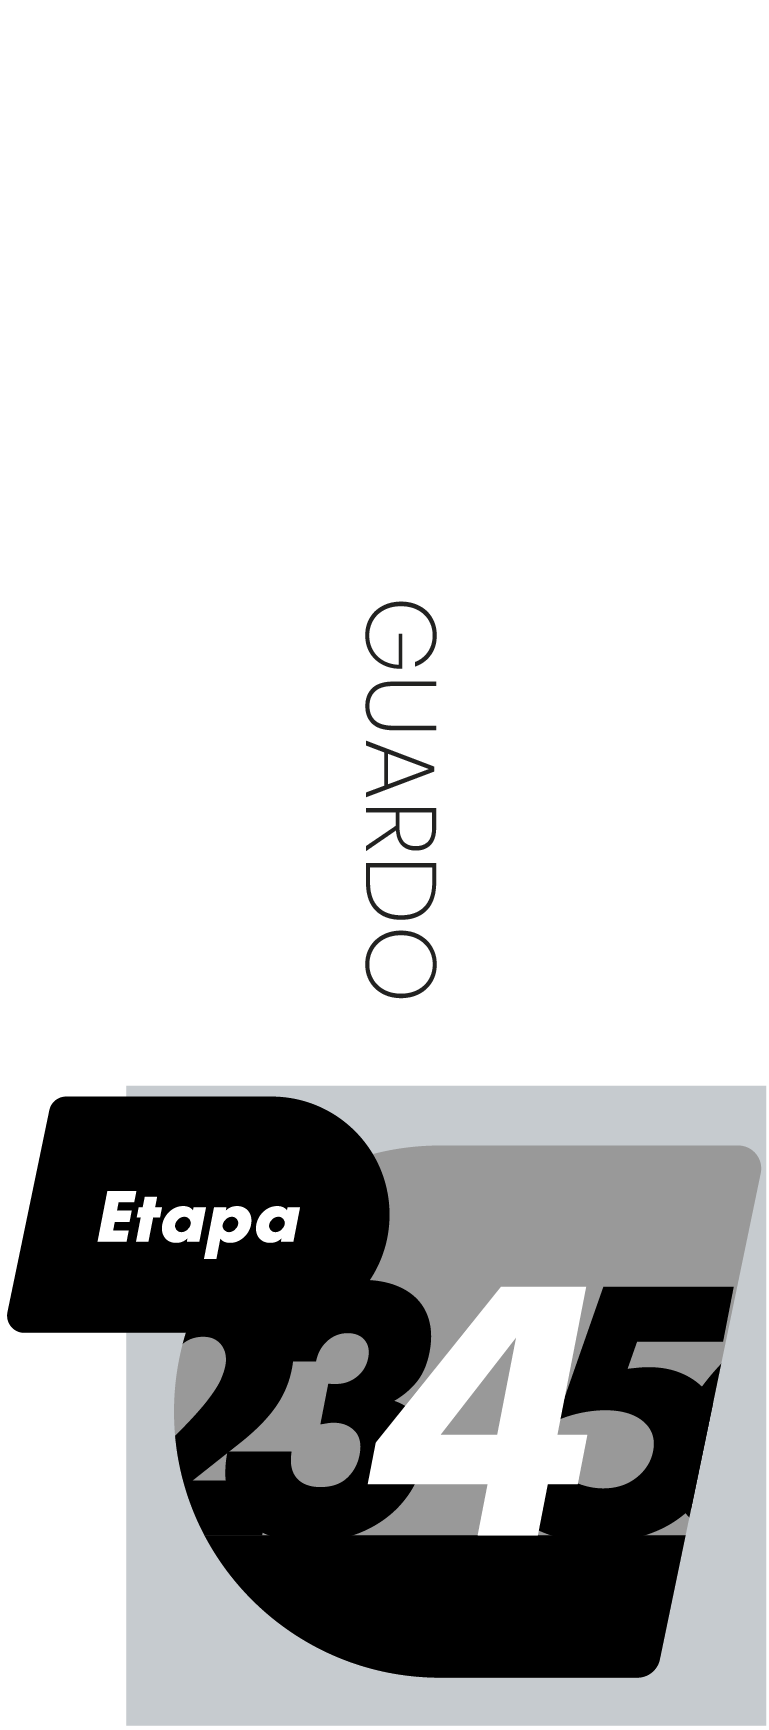 Etapa 4 - Guardo - CERRADA